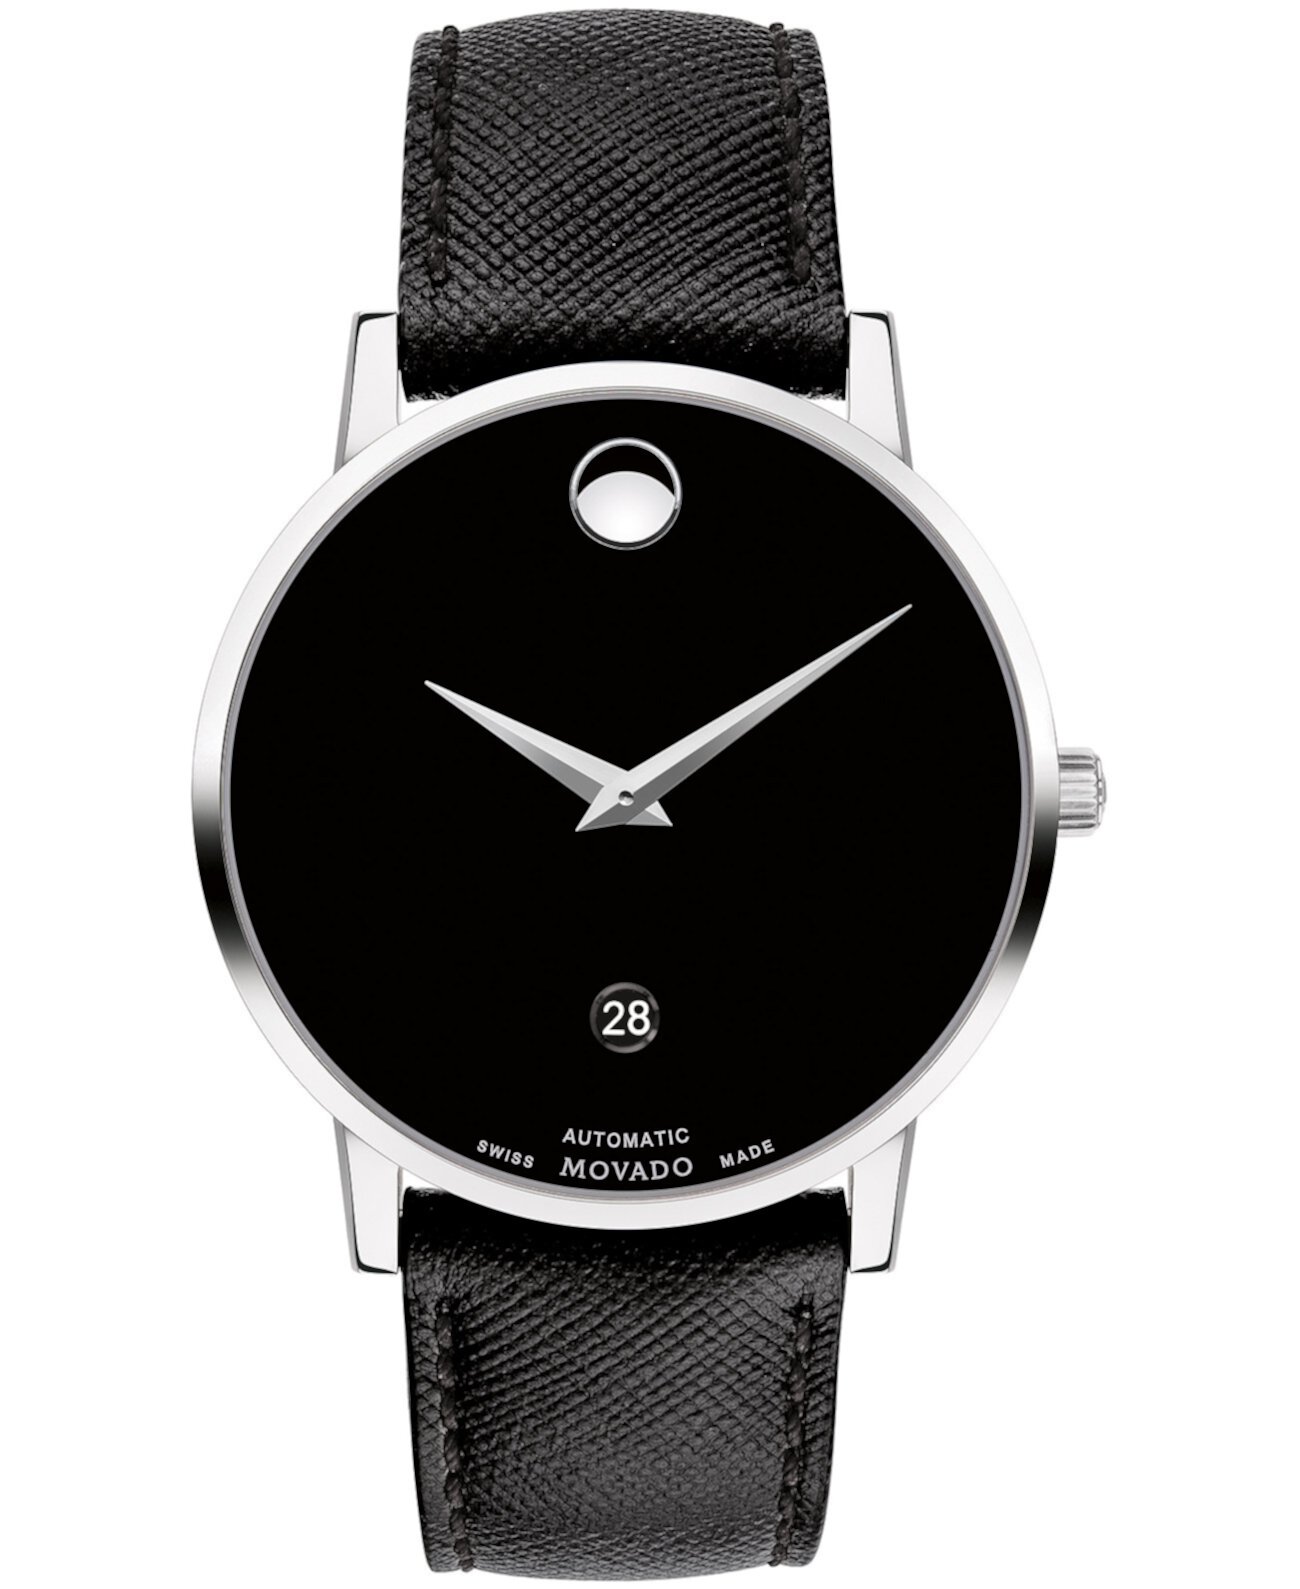 Мужские наручные часы Swiss Automatic Museum с черным ремешком из телячьей кожи 40 мм Movado